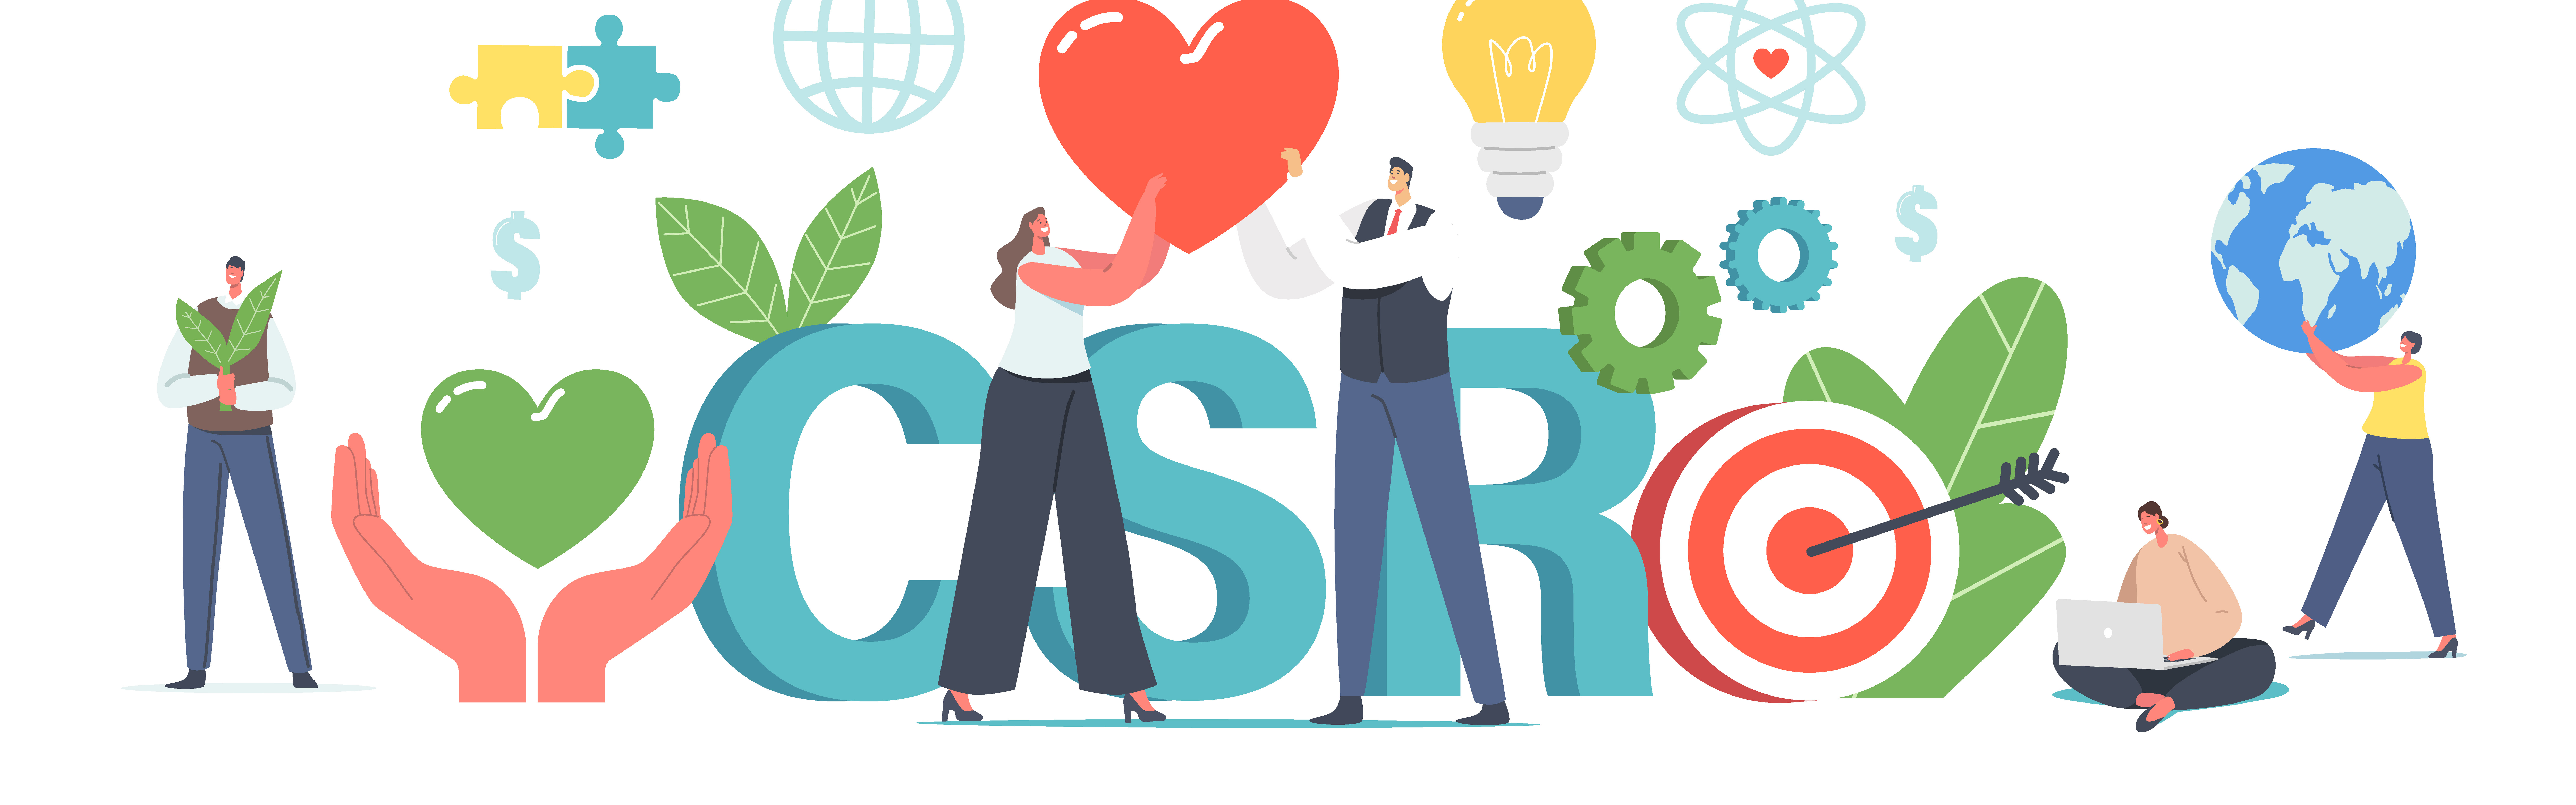 Symbolbild für die Vielfalt von CSR-Aktivitäten im Unternehmen